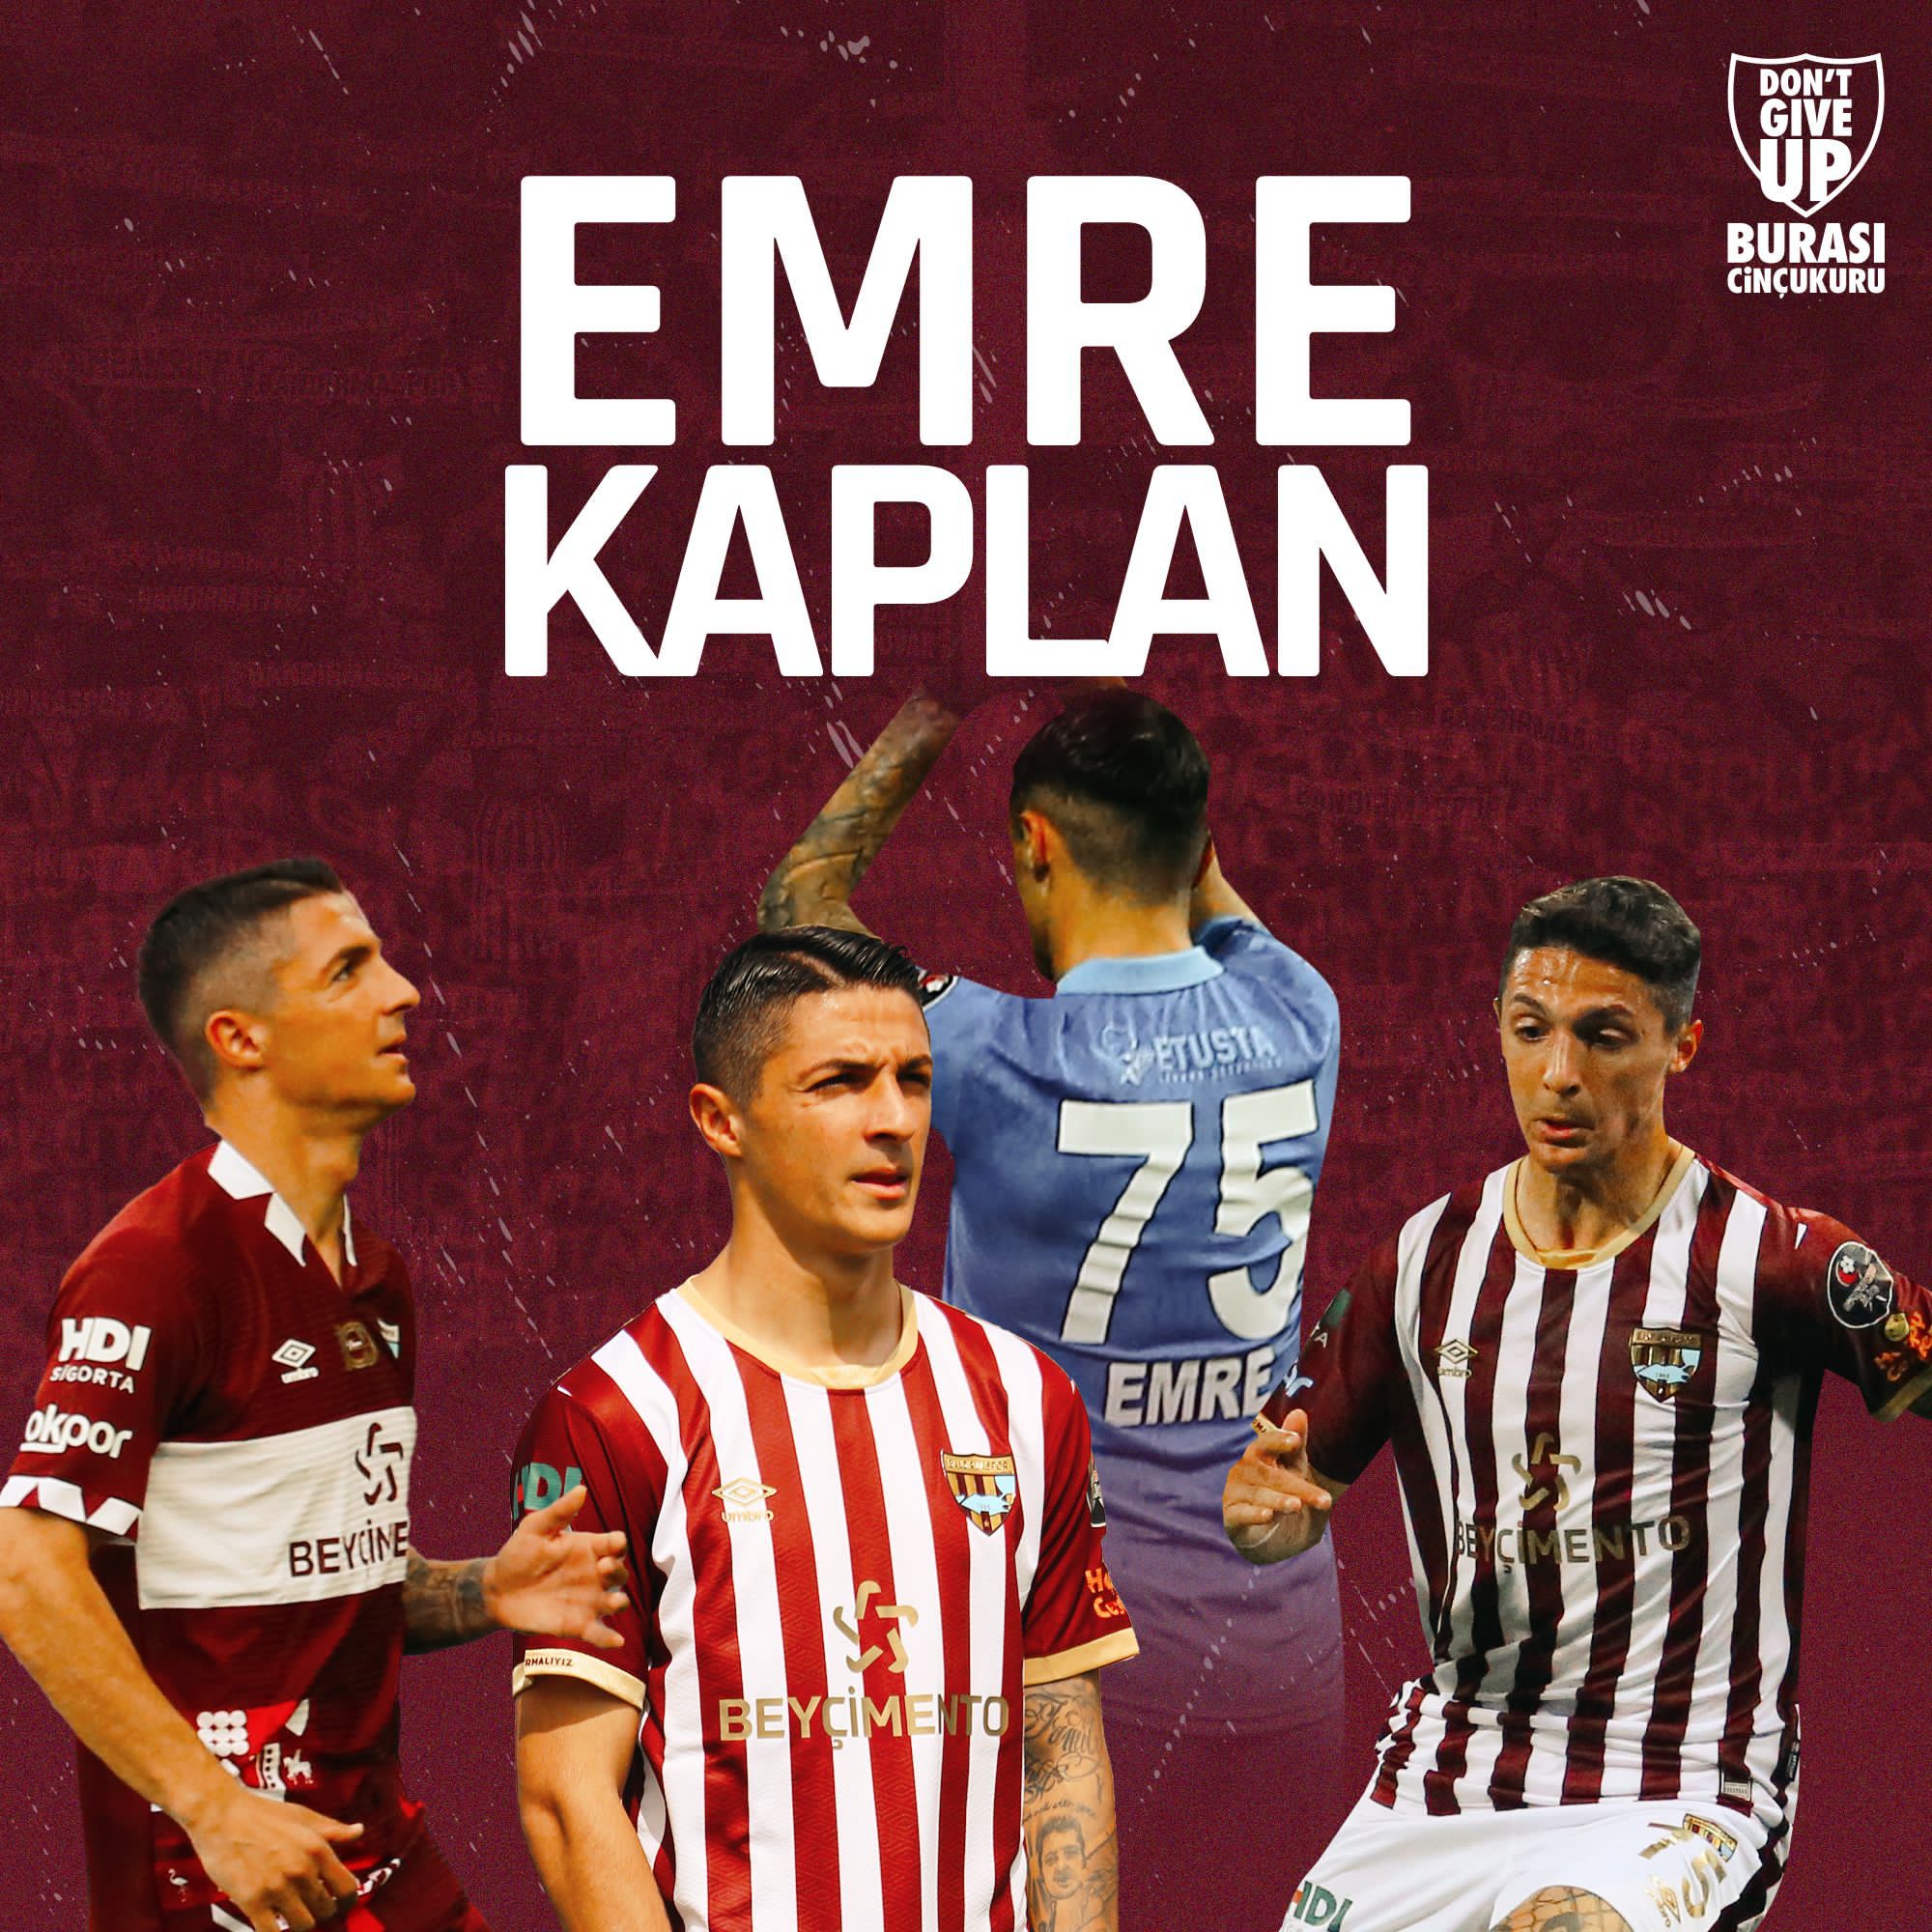 2022-2023 Sezonunda Medipol Başakşehir FK’dan kiralık olarak kadromuza katılan Emre Kaplan ile kiralık olarak yeniden sözleşme imzalanmıştır.